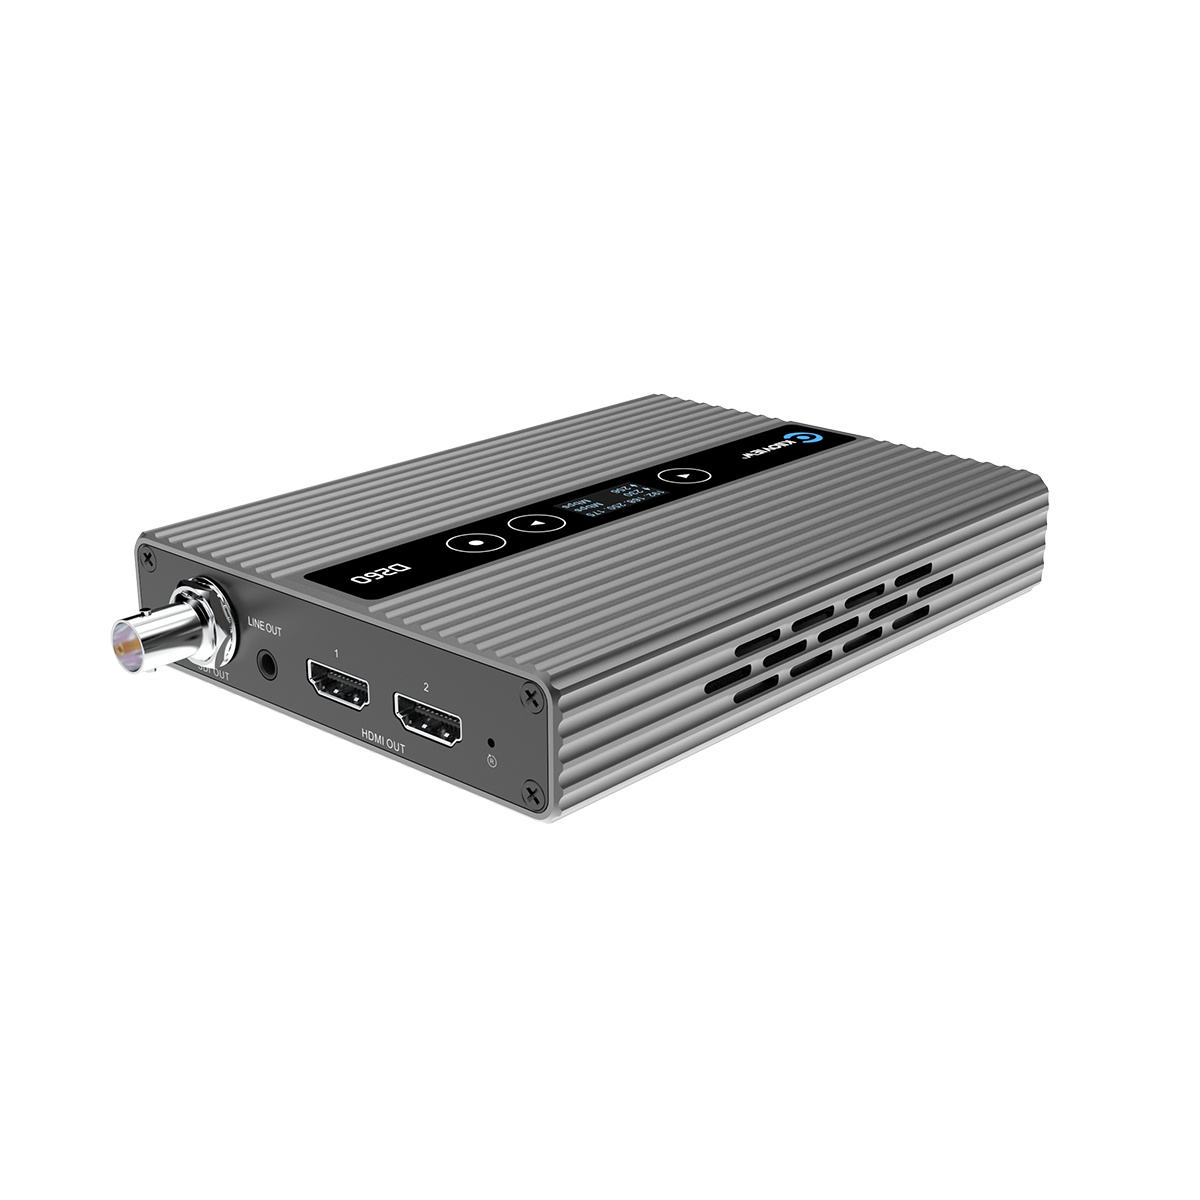 Kiloview D260 (HD IP to SDI/HDMI/VGA Video Decoder)